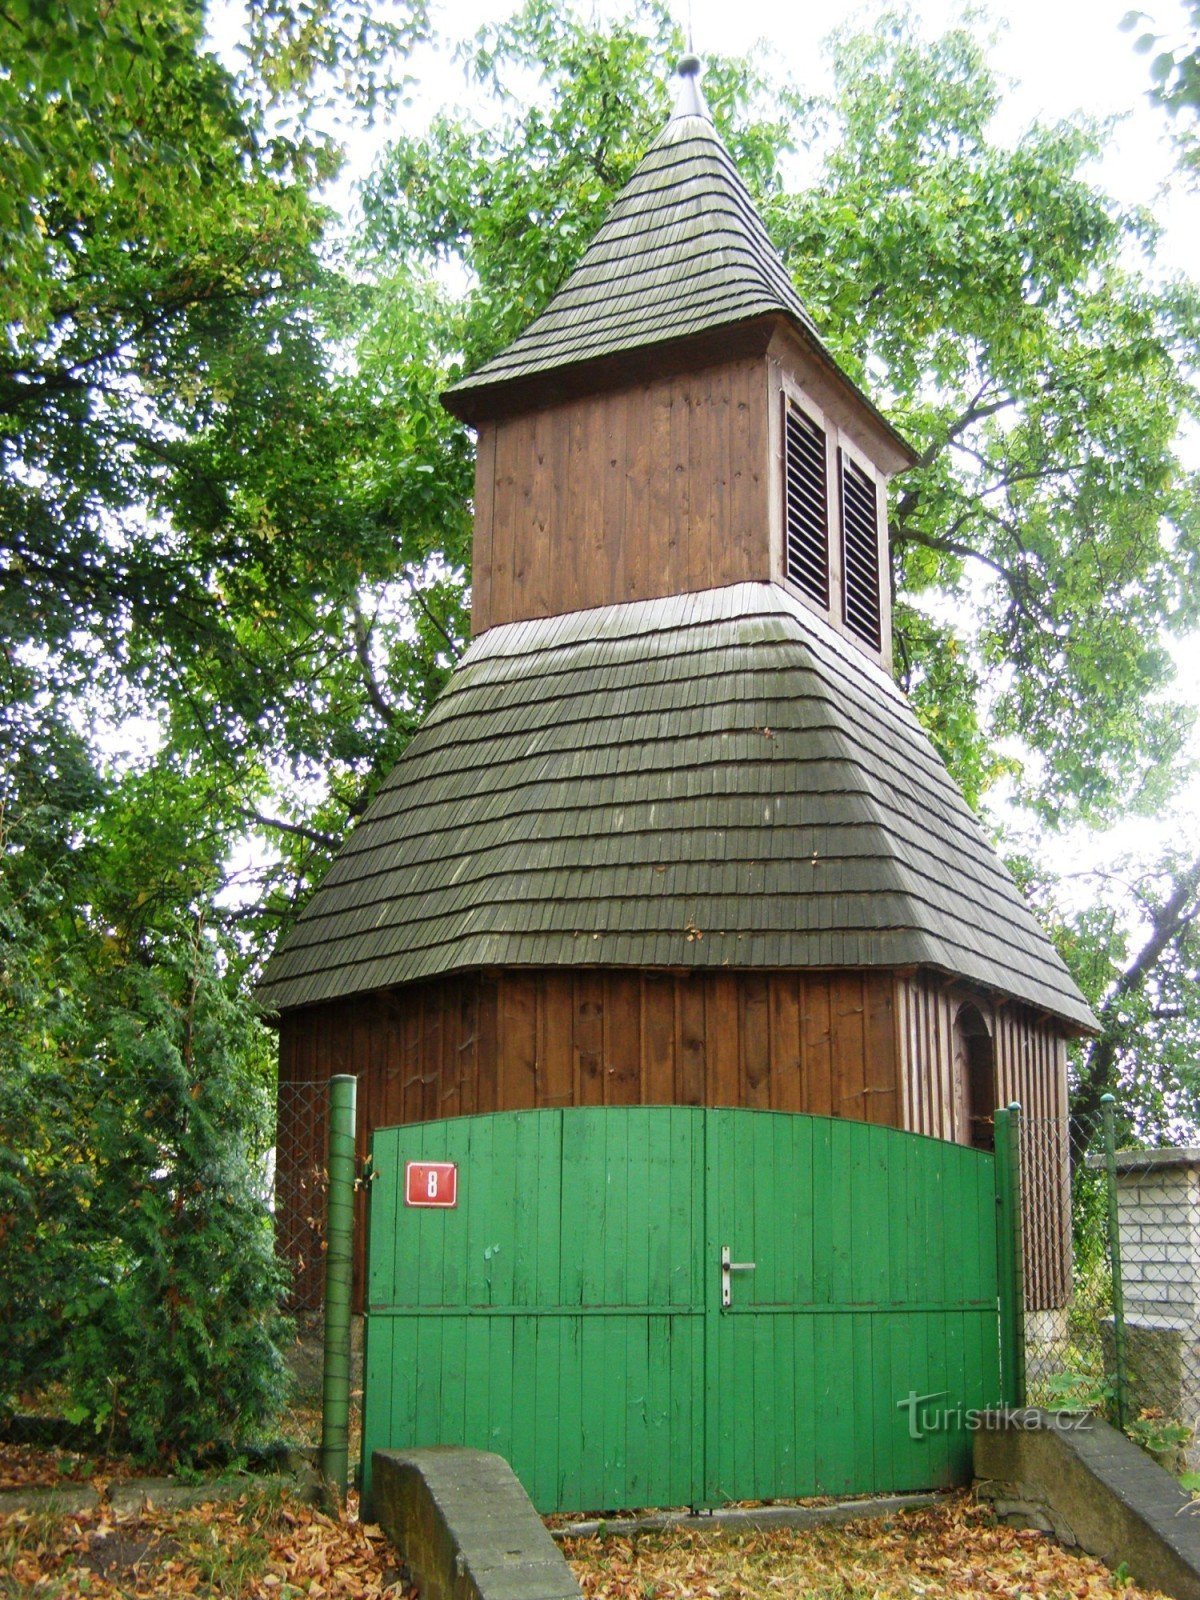 Скриваны - деревянная колокольня